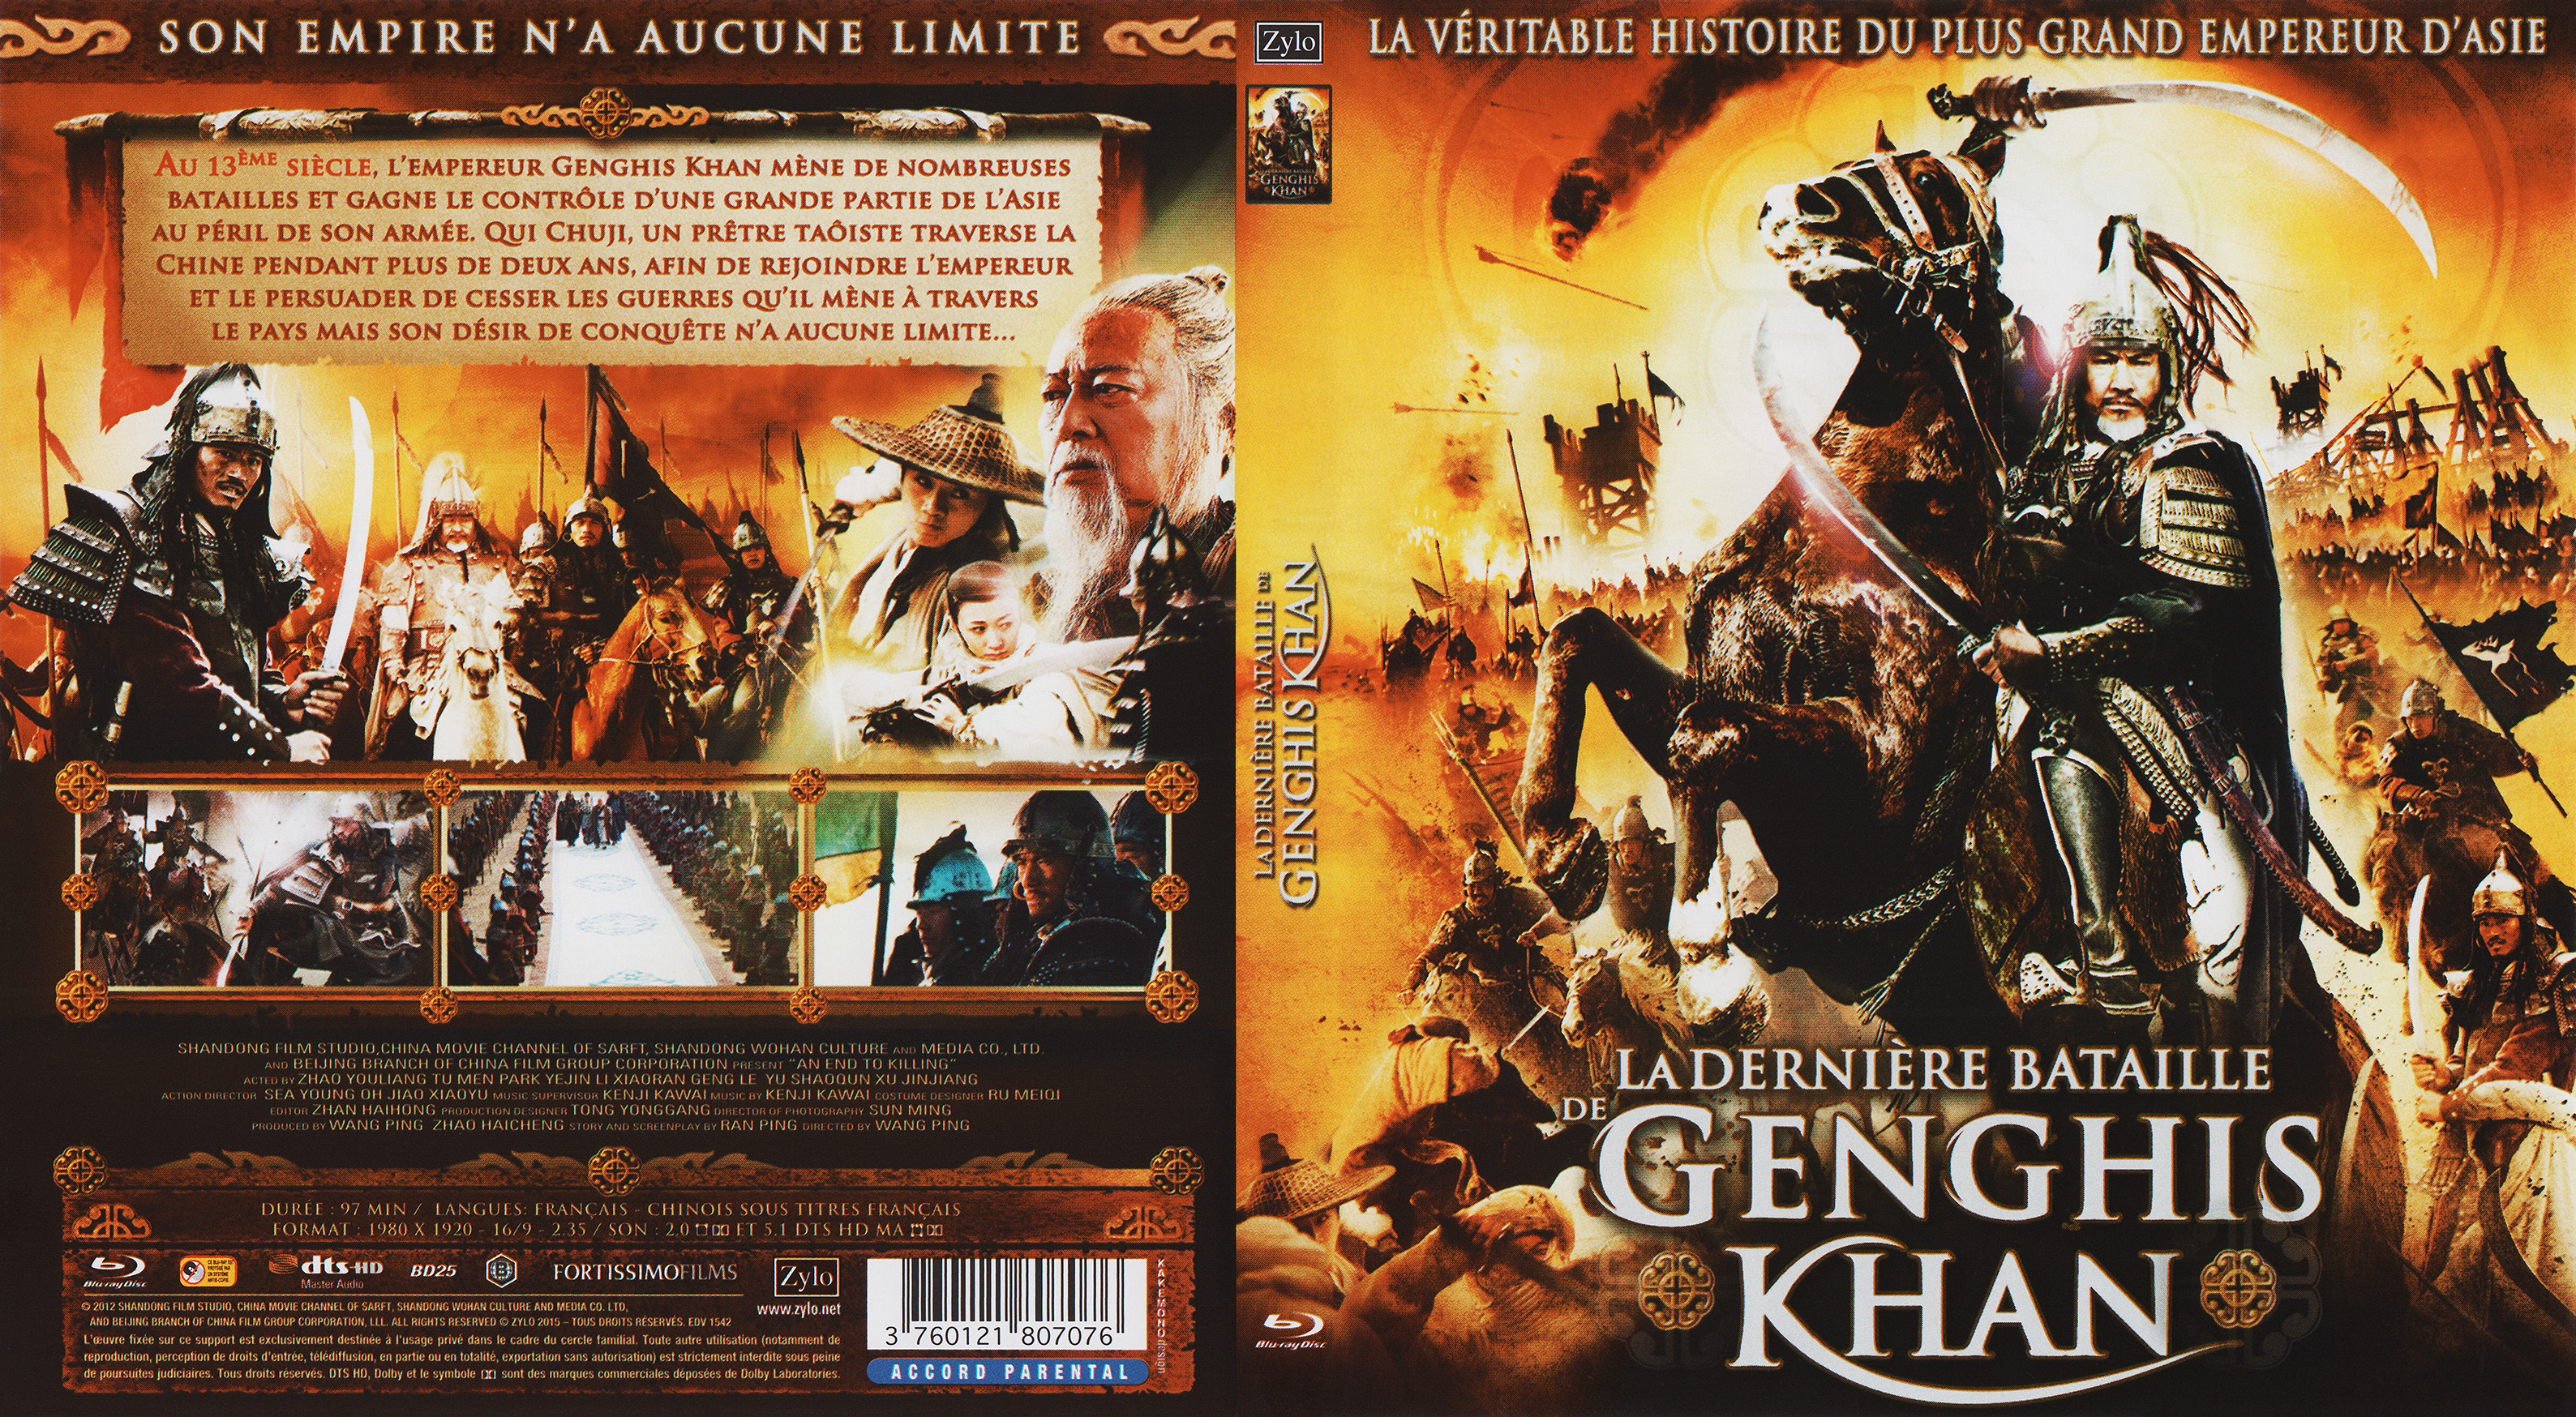 Jaquette DVD La dernire bataille de genghis khan (BLU-RAY)